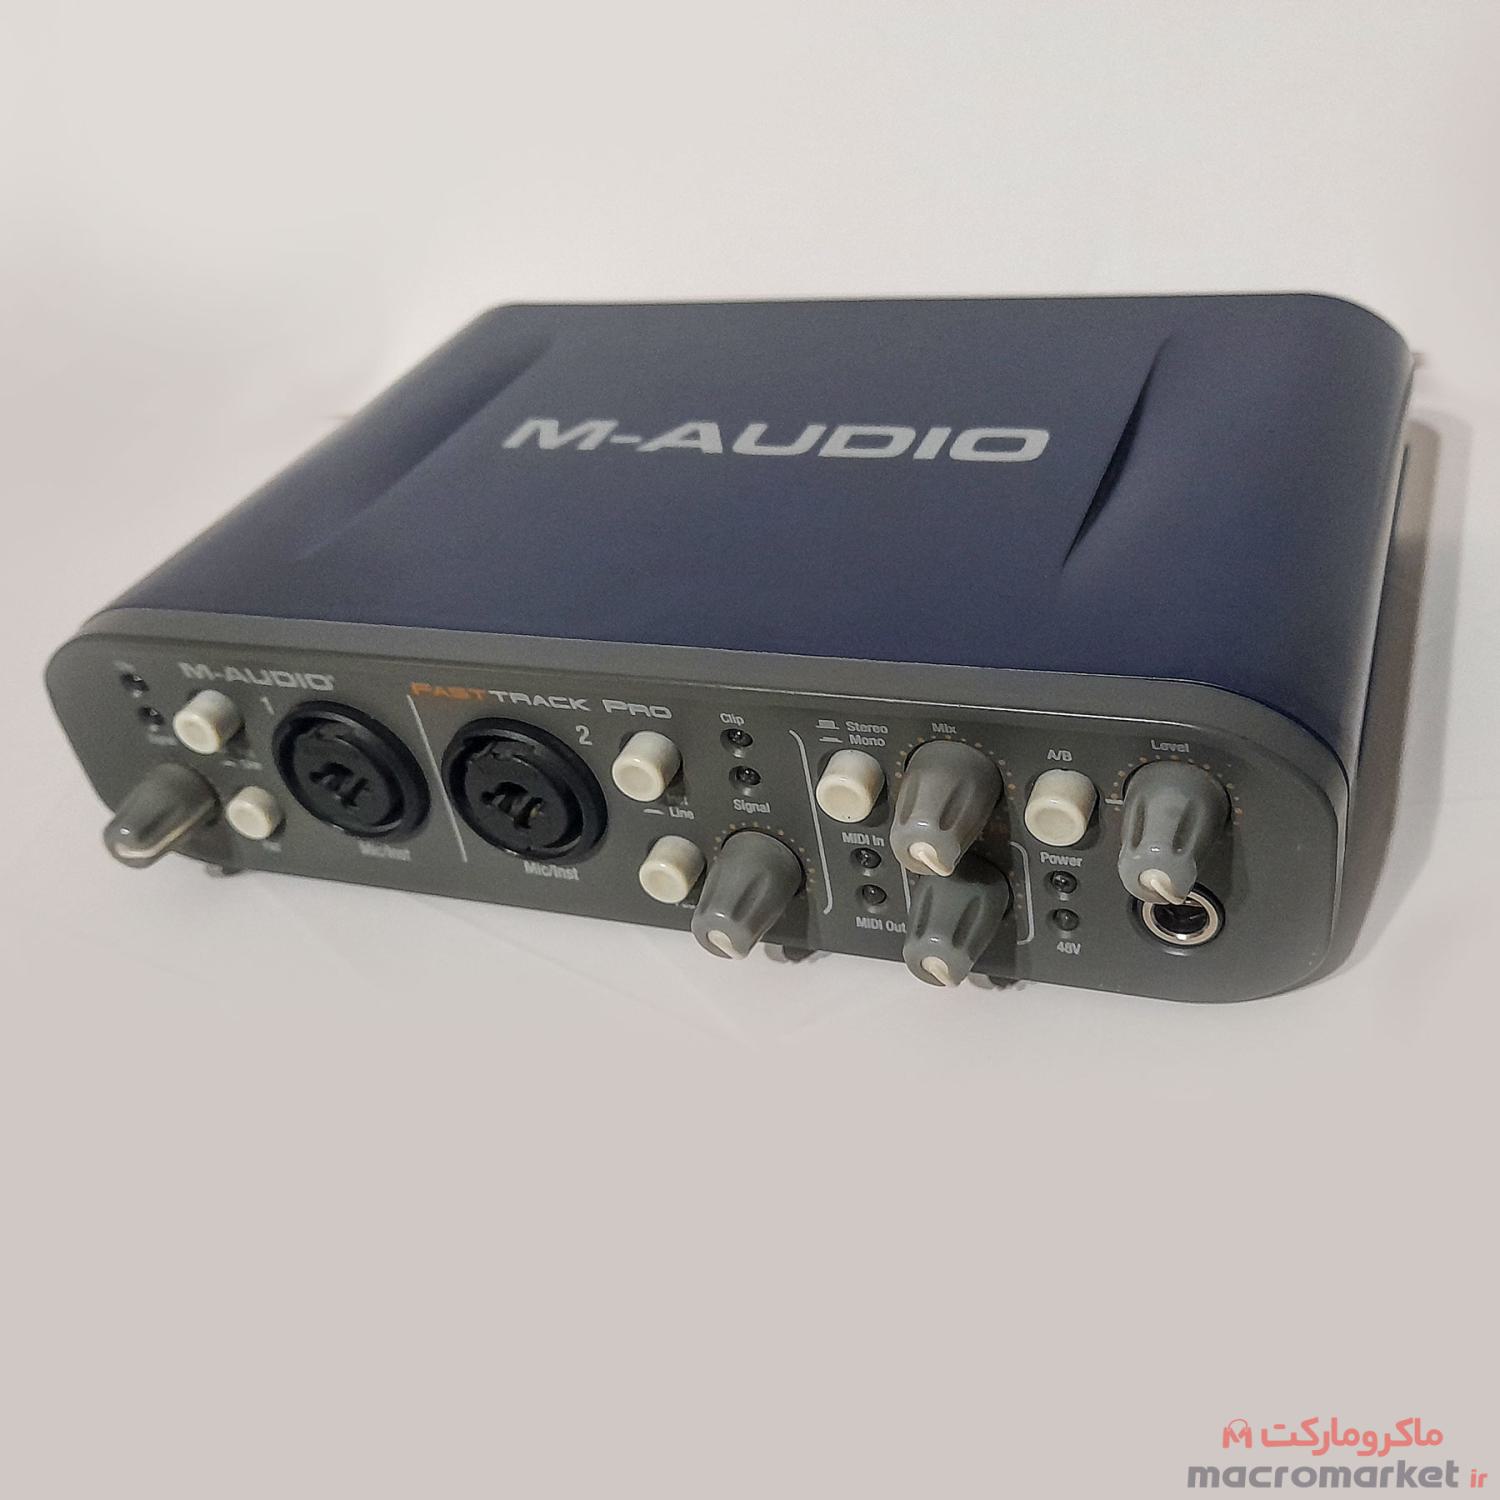 کارت صدا استودیو AVID M-AUDIO مدل FAST TRACK PRO در حد نو - 2 ورودی  و 3 خروجی بالانس - کاملا سالم تضمینی و در حد نوع بدون کوچکترین خط و خش